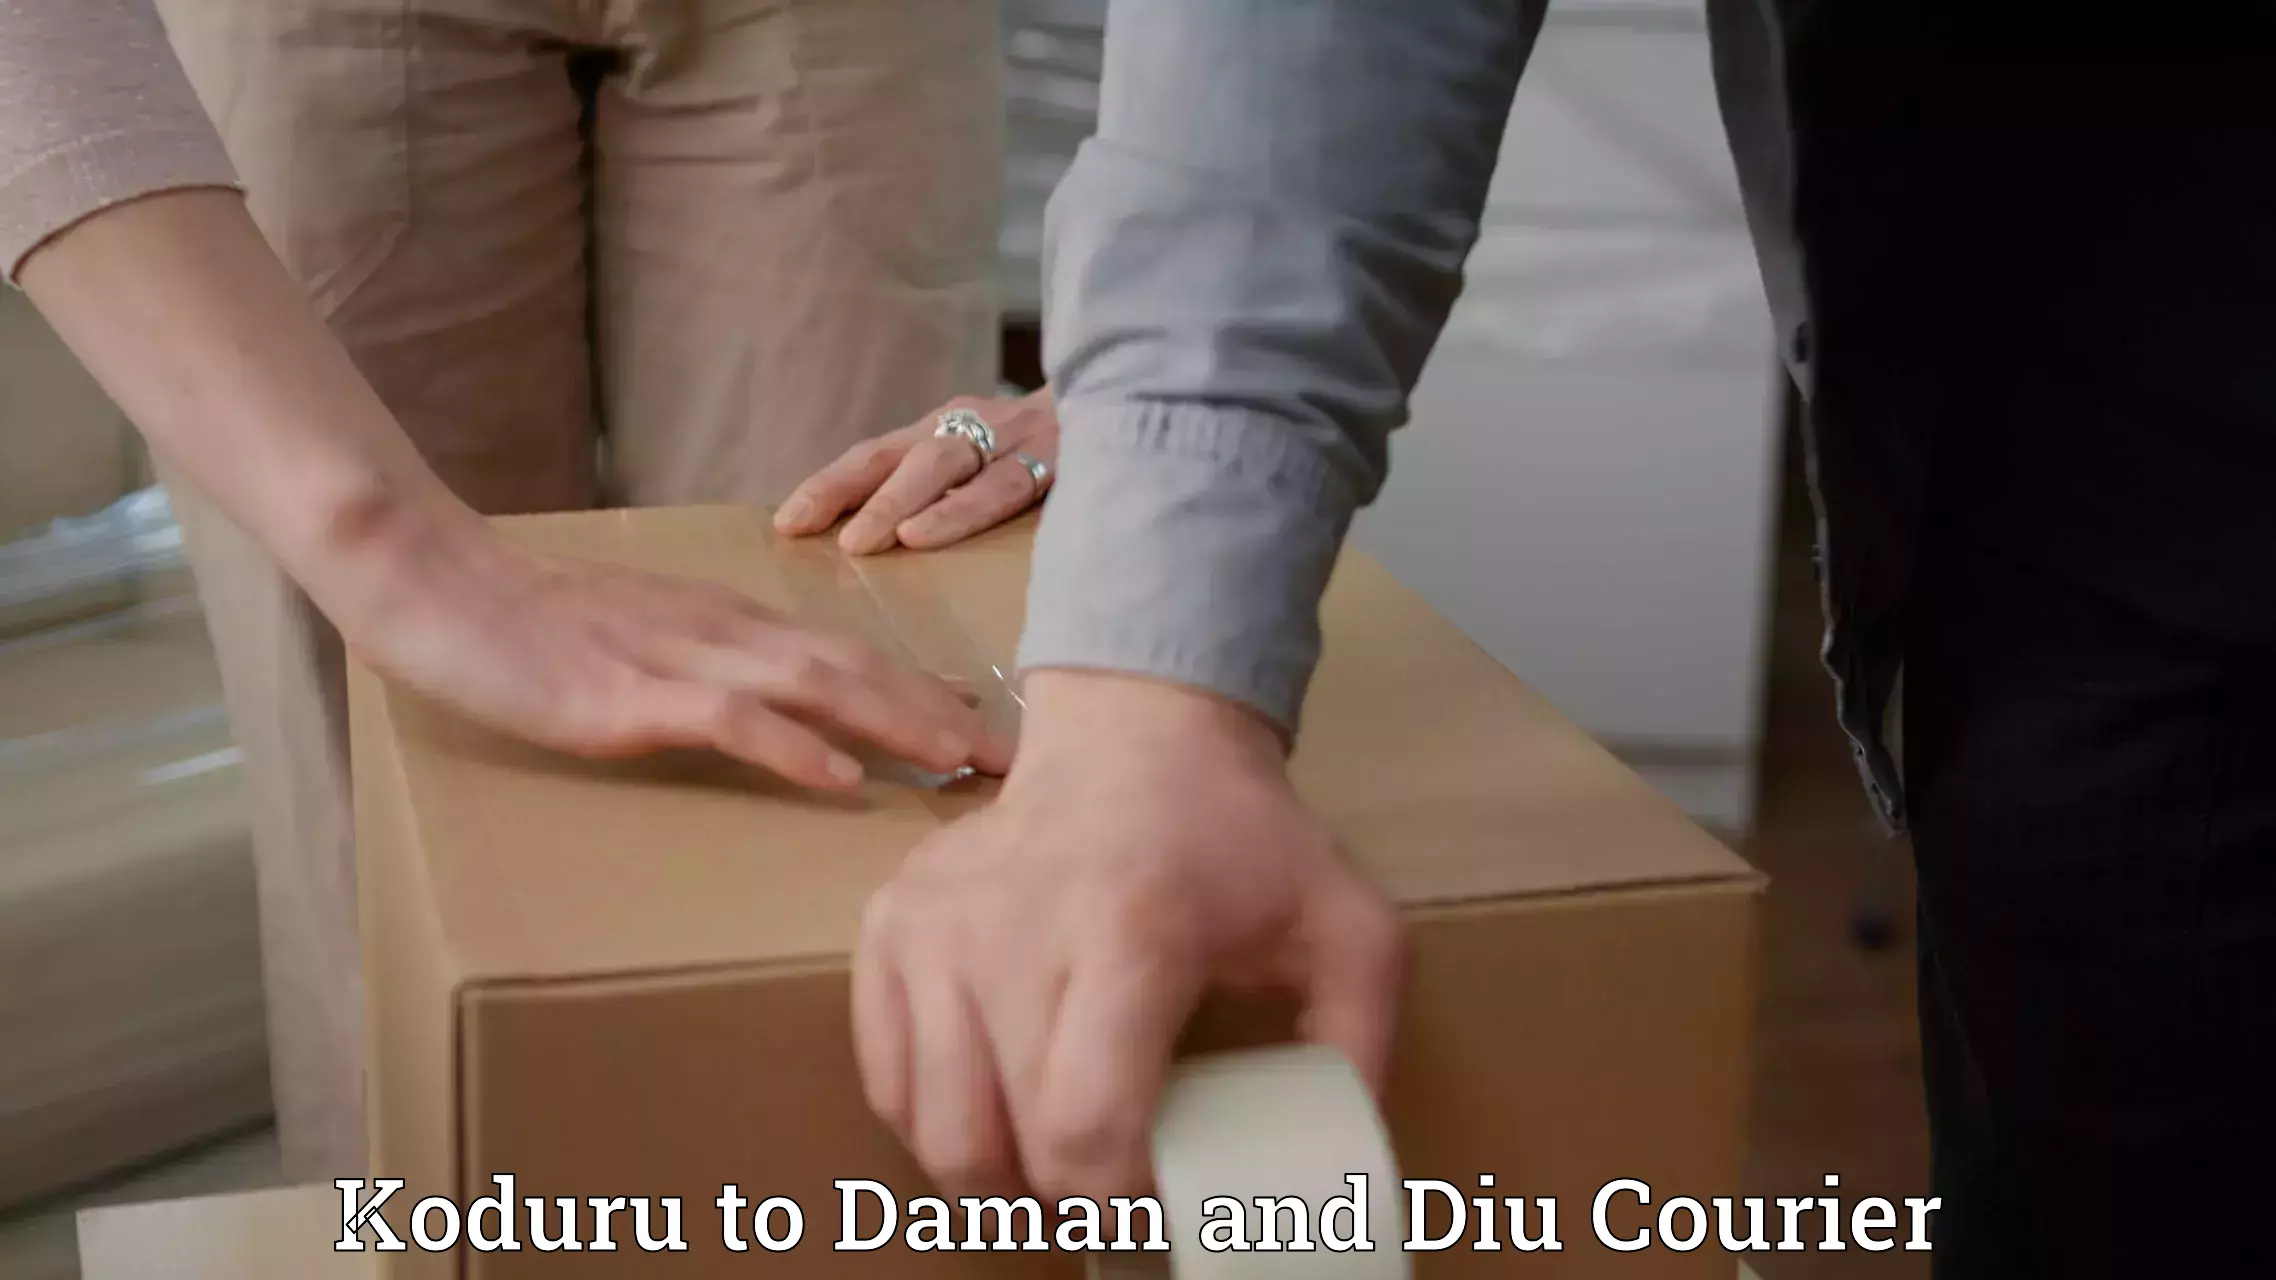 Efficient cargo services Koduru to Daman and Diu